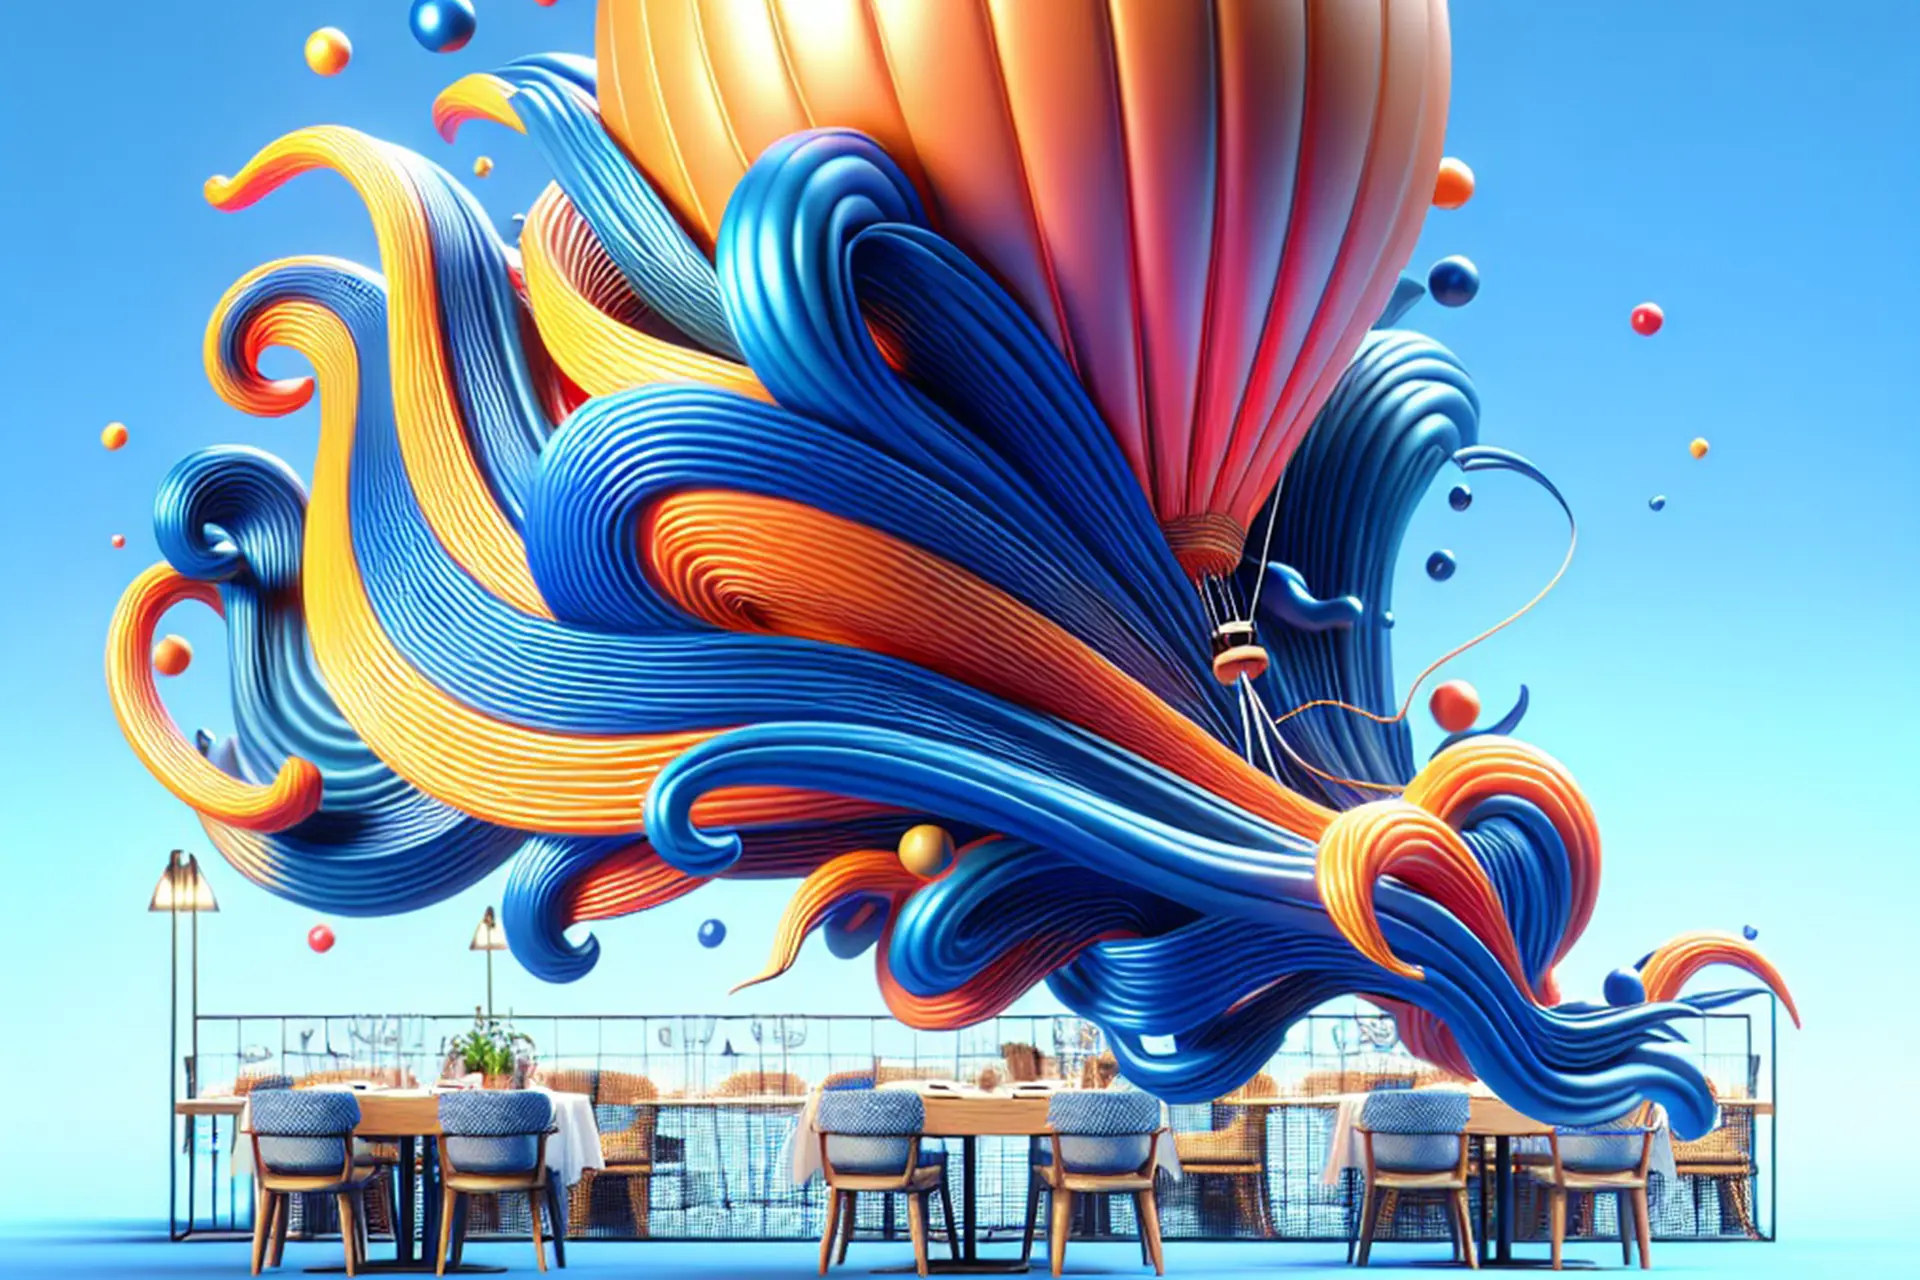 Tavolo da ristorante moderno con decorazione artistica di palloncini e onde colorate